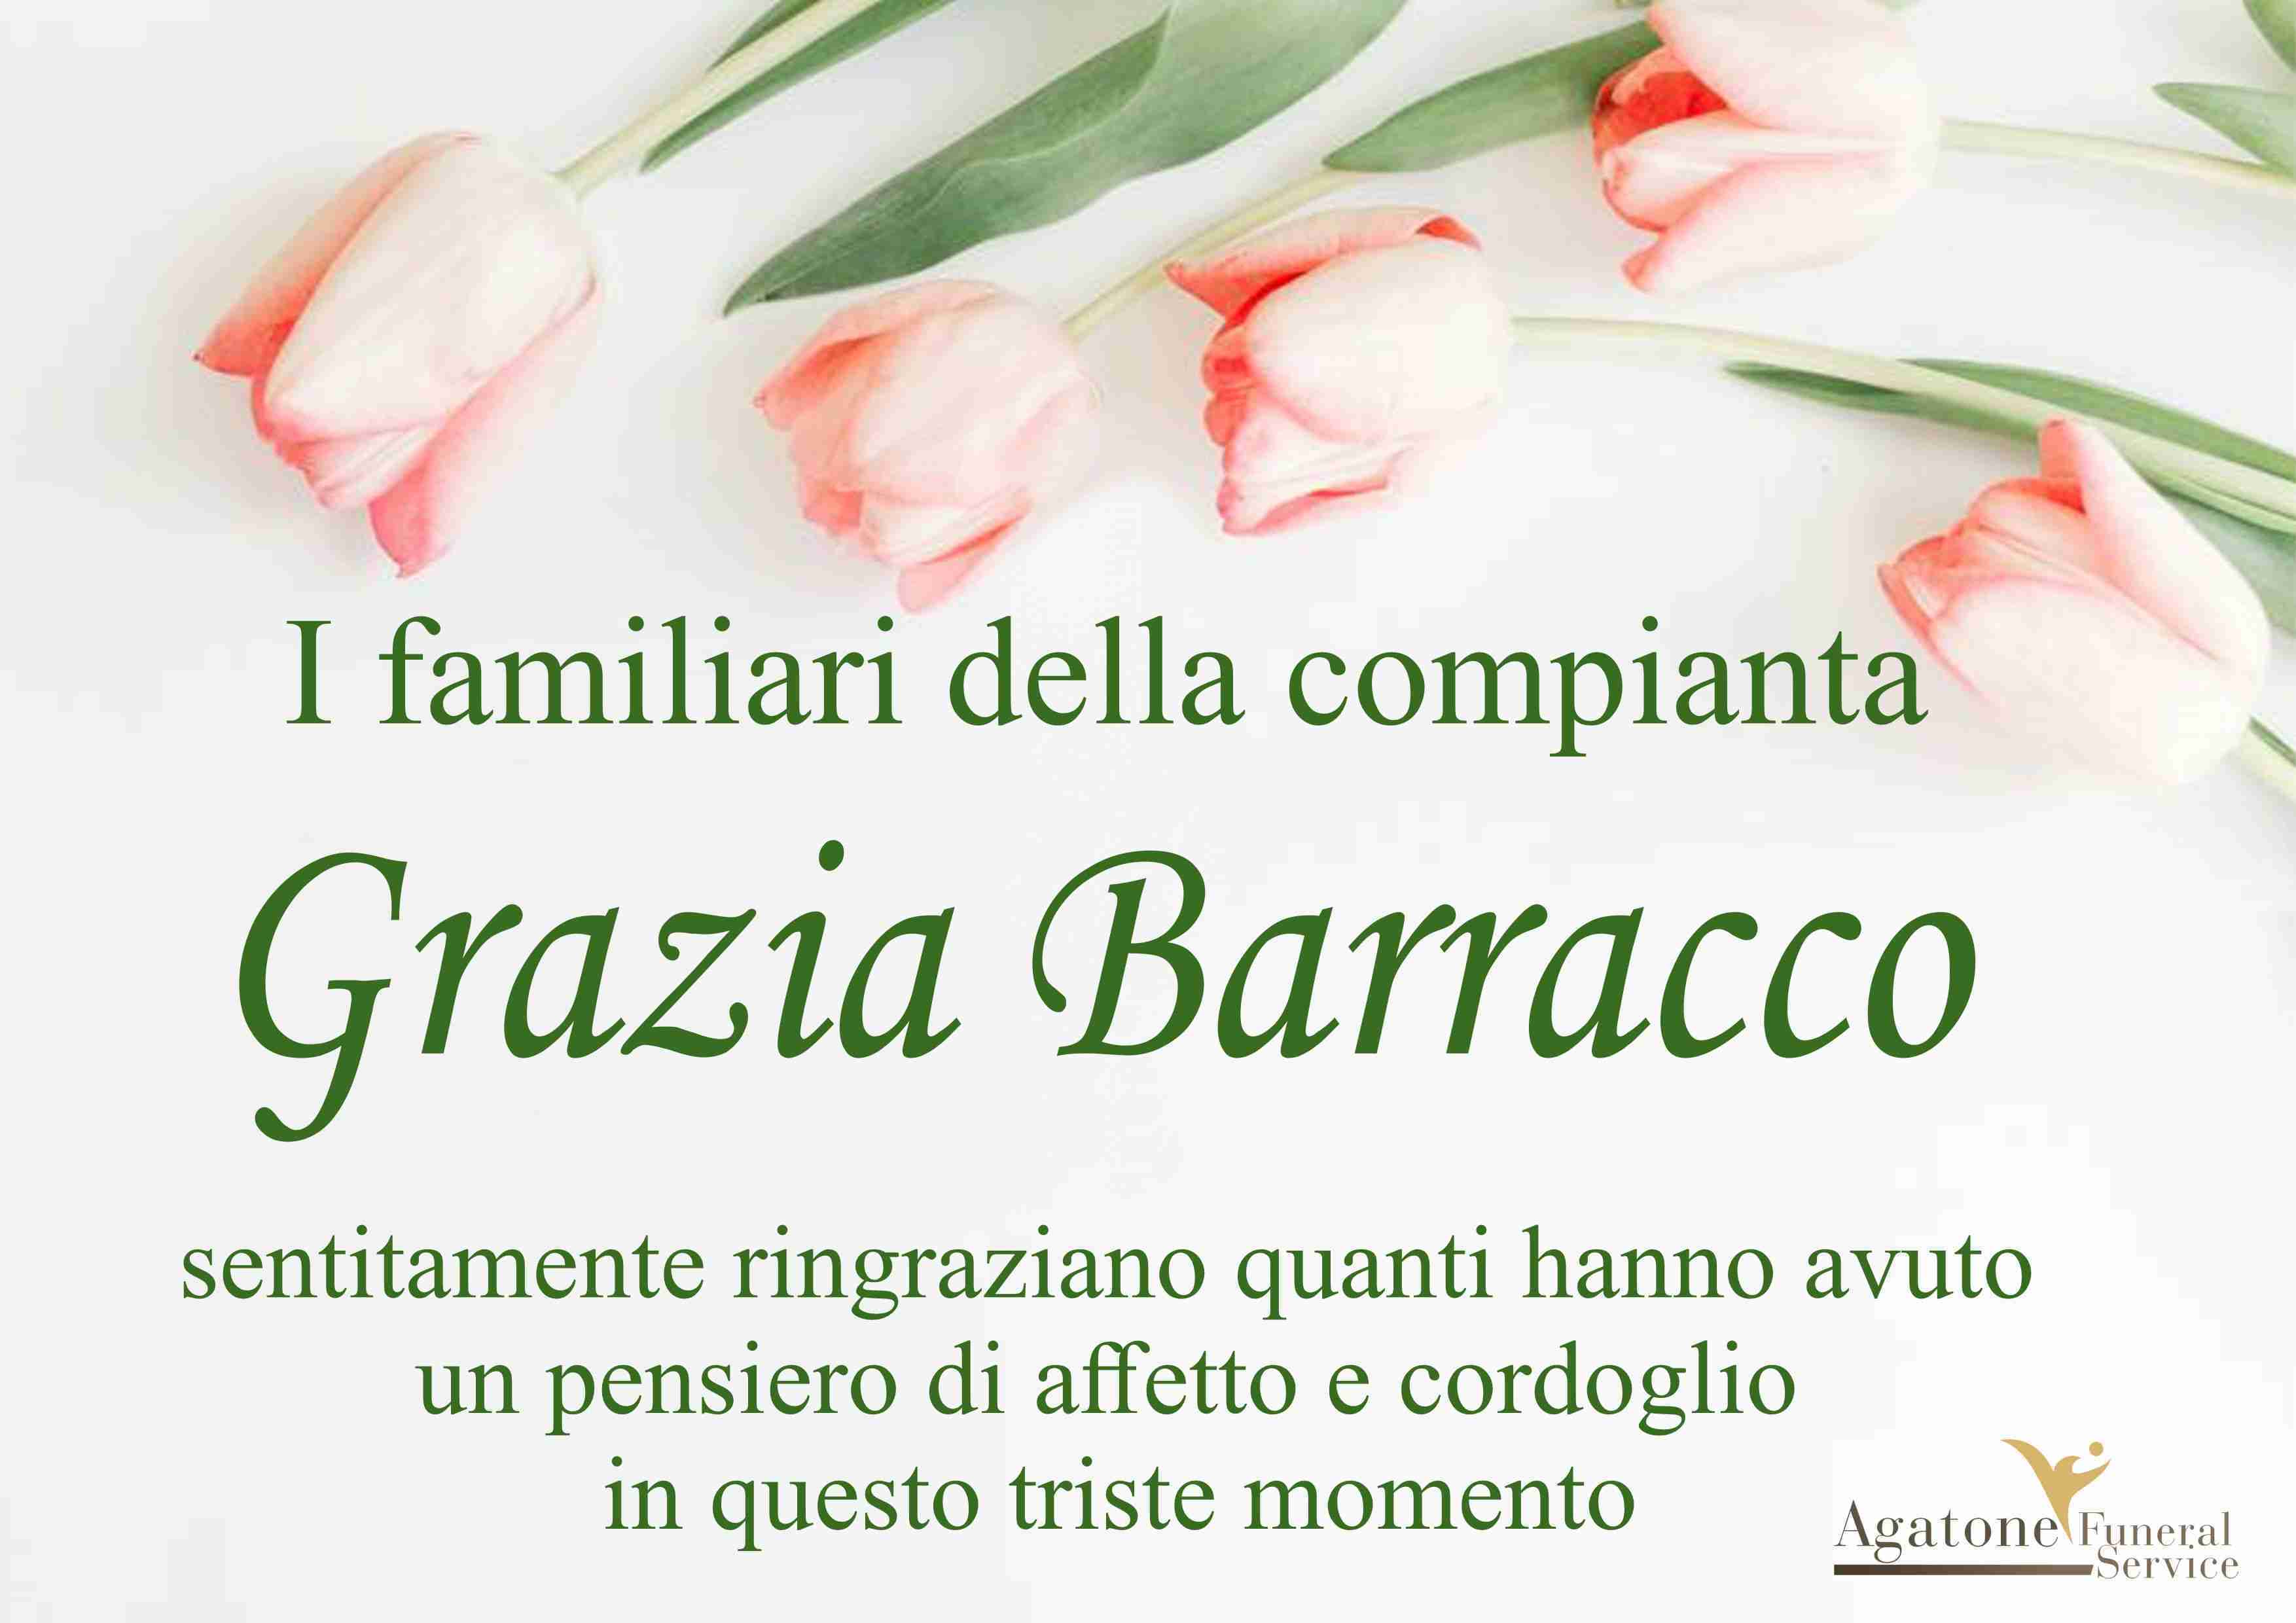 Grazia Barracco